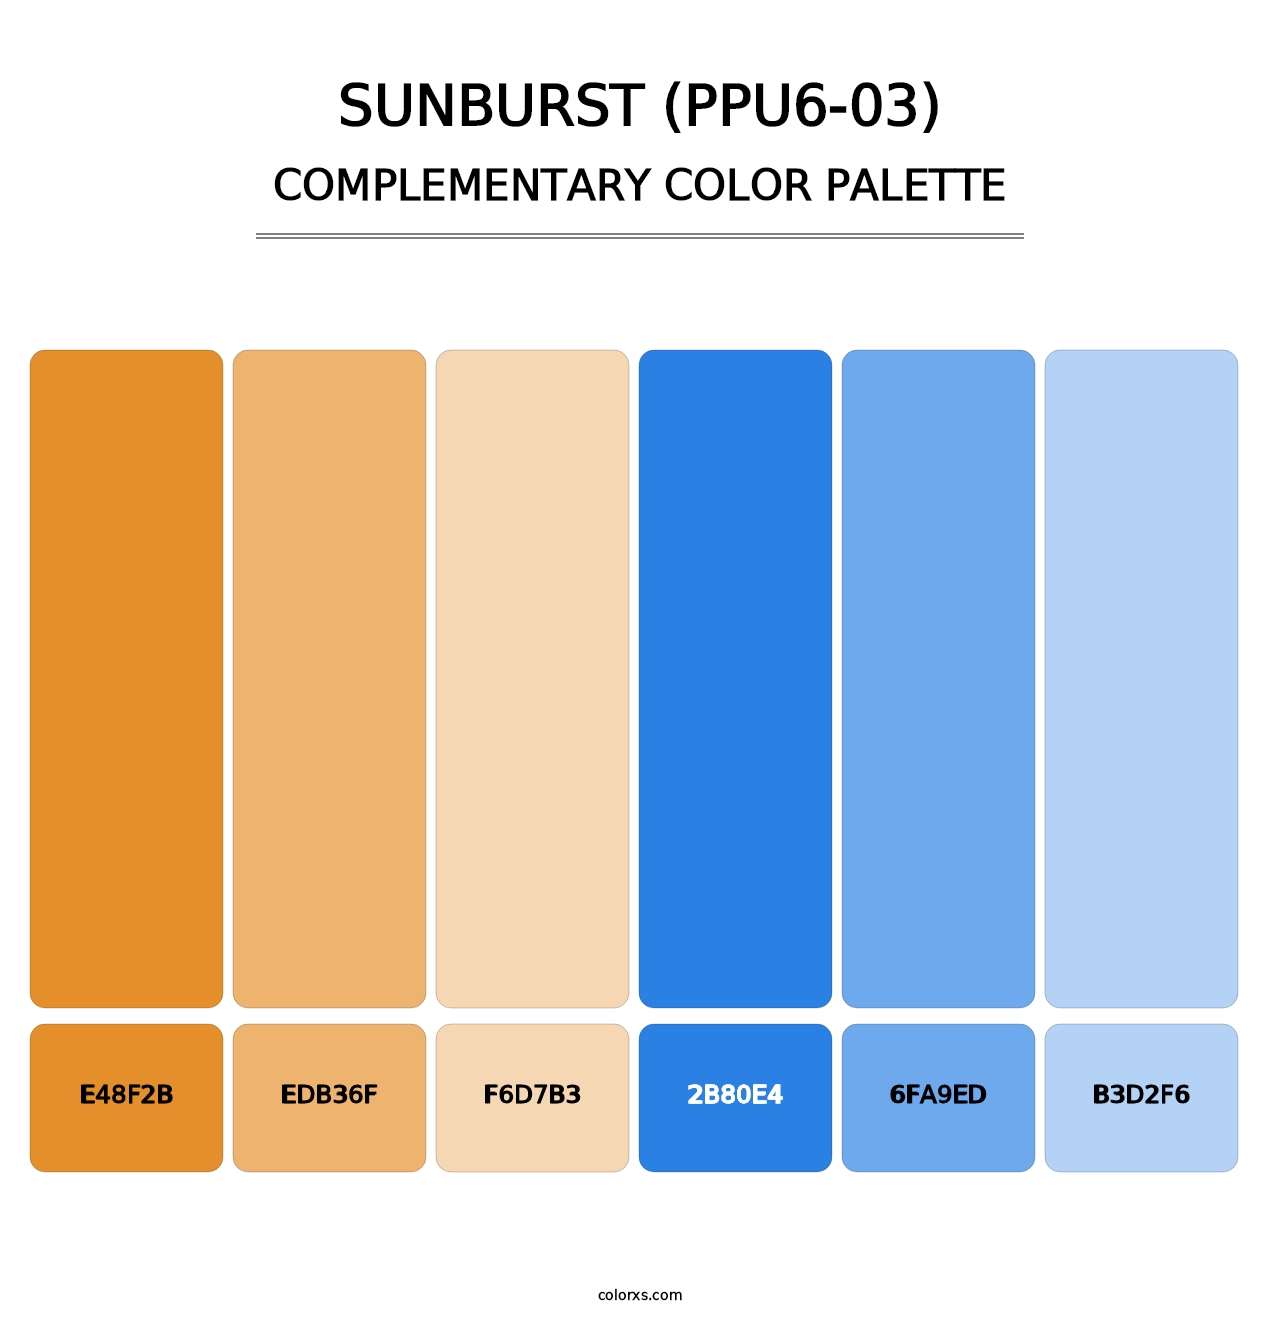 Sunburst (PPU6-03) - Complementary Color Palette